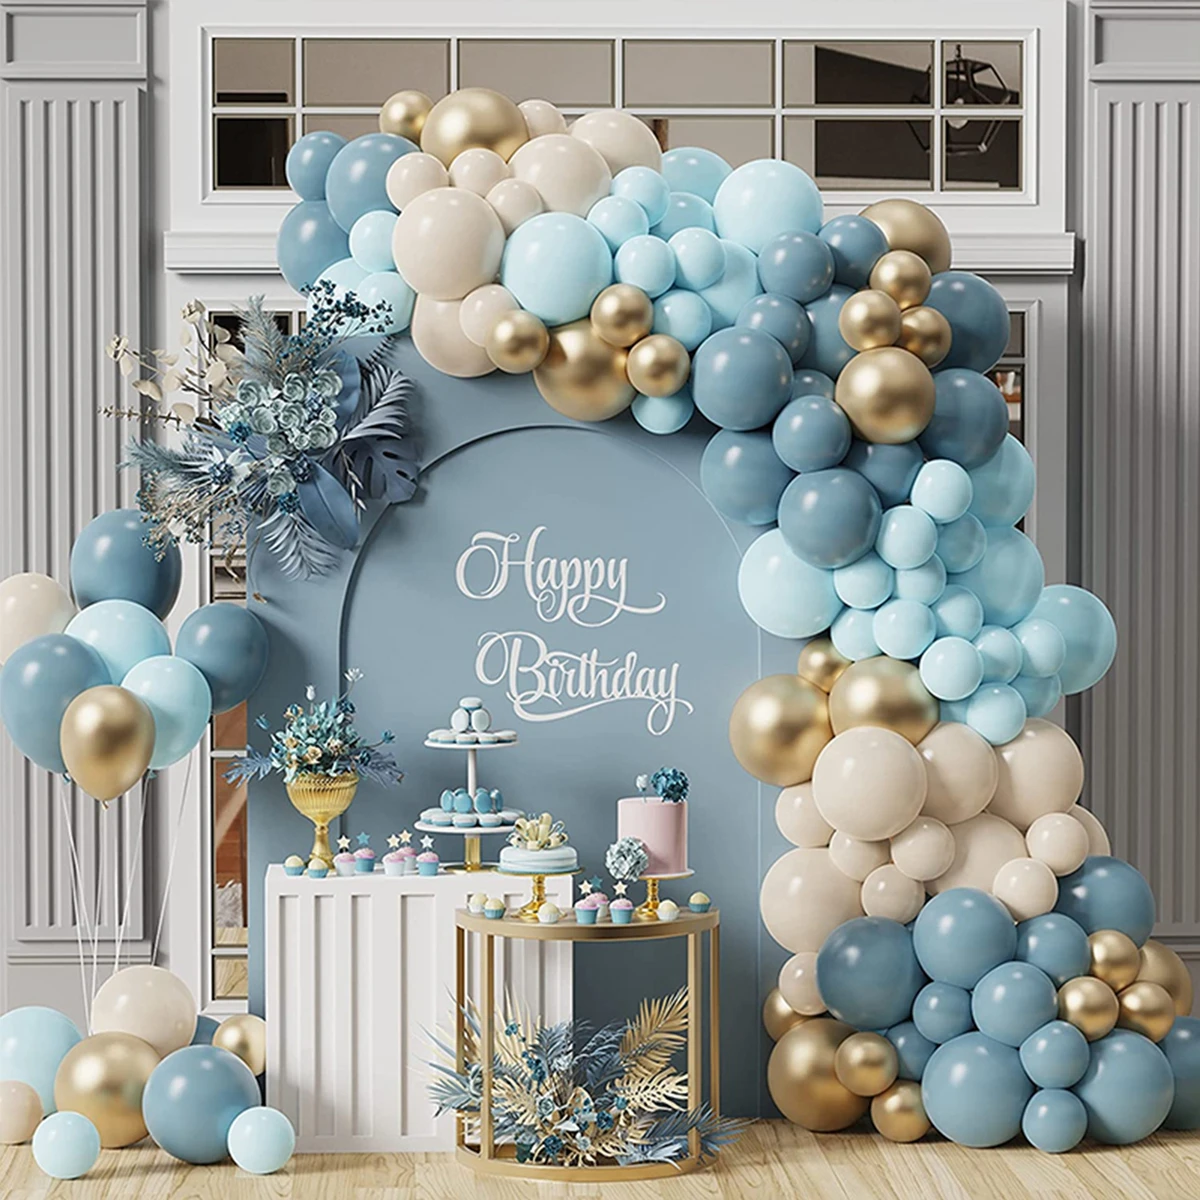 זהב כחול בלון גרלנד קשת ערכת חתונה, מסיבת יום הולדת תפאורה ילדים למבוגרים יום הולדת Baloon כוכב לטקס Ballon מקלחת תינוק ילד